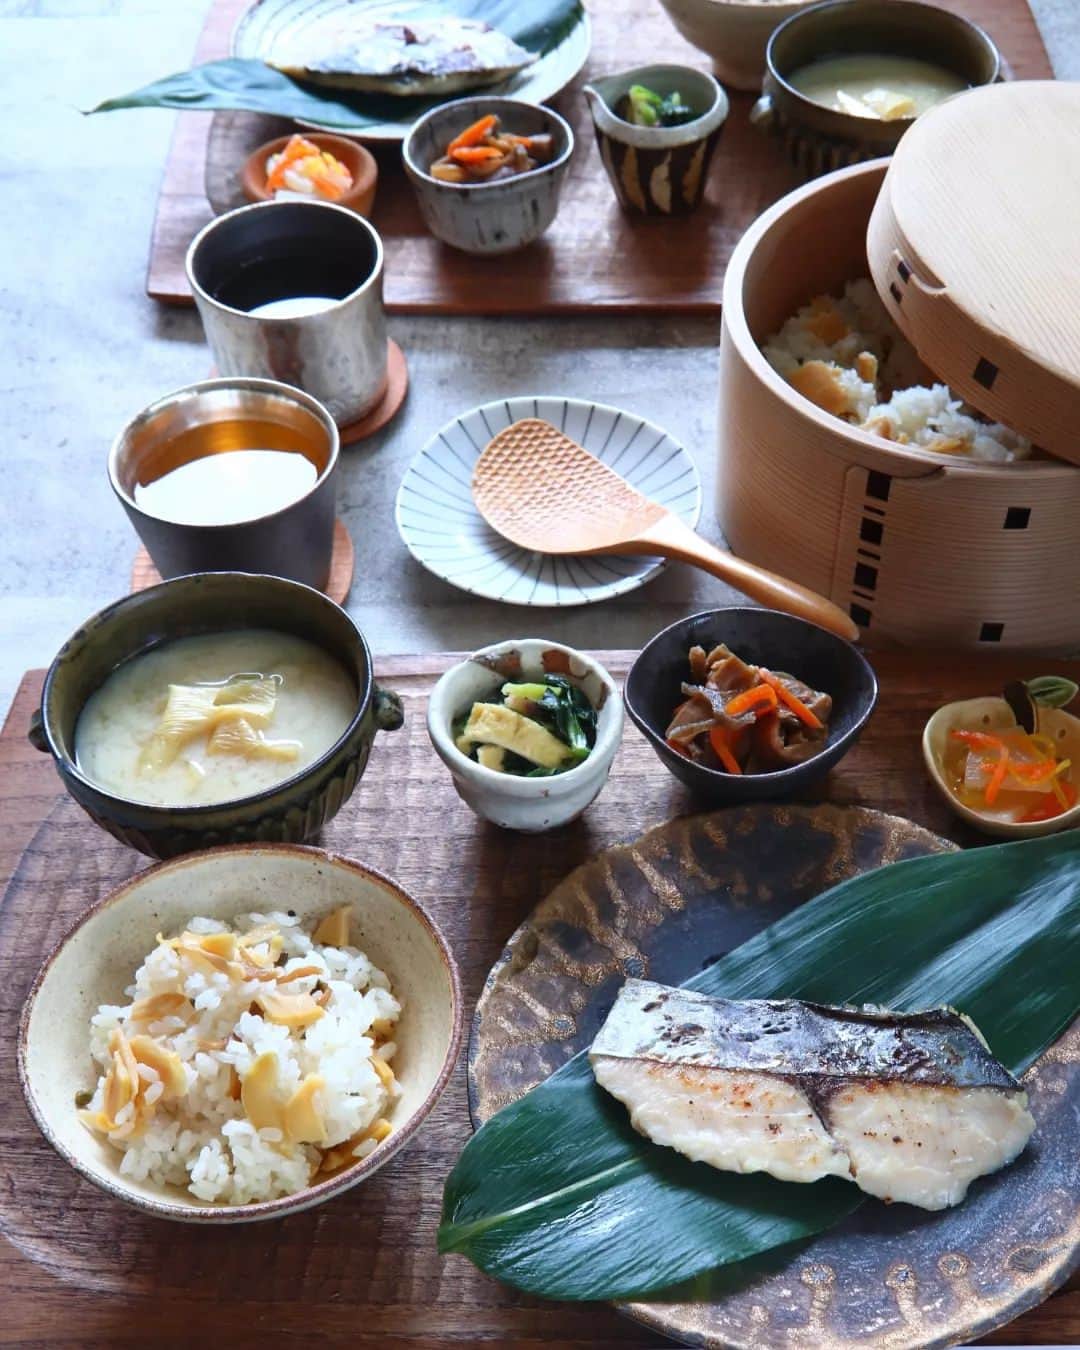 Satomiのインスタグラム：「. . 2023.11.26* . 日常から離れて 旅先で過ごす朝のような 特別なひとときを . アンバサダーをさせていただいている 咲耶さま @sakuya_meal 今月の旅御膳は 京のおばんざい御膳です。 . 京都の伝統料理である西京焼きや 香り高いちりめん竹の子ごはん 彩り豊かなおばんざいなど 上品で優しい味わいが楽しめます。 . 京都は、私にとって馴染みの地。 学生時代の思い出がたくさんある場所です。 そんな京都に想いを馳せながら おいしくいただきました。 どれも京都を感じさせてくれる一品✨ 中でも西京焼きがとても美味しかったです。 . 12月10日まで、お歳暮商品を発売中。 通常は冷蔵でのお届けですが、 お歳暮商品は冷凍でのお届けです。 消費期限が長く、熨斗もつけられるので お歳暮の贈り物に最適です。 薬味までセットに入っているので 自分で準備する材料がなく、 ほんの少し調理するだけで 本格的な御膳が楽しめます。 冬のご挨拶にいかがでしょうか❄️ . 詳細は、咲耶さまInstagramよりどうぞ🌸 @sakuya_meal  . #咲耶  #咲耶ごはん  #旅御膳  #和食御膳  #お歳暮 . #お取り寄せごはん #ミールキット  #京都 #京料理 #和食  #器 #器好き  #余宮隆 #佐藤源三郎 #曲げわっぱ  #おうちごはんlover #japanesefood  #japan #kyoto #sakuya #mealkit  . .」